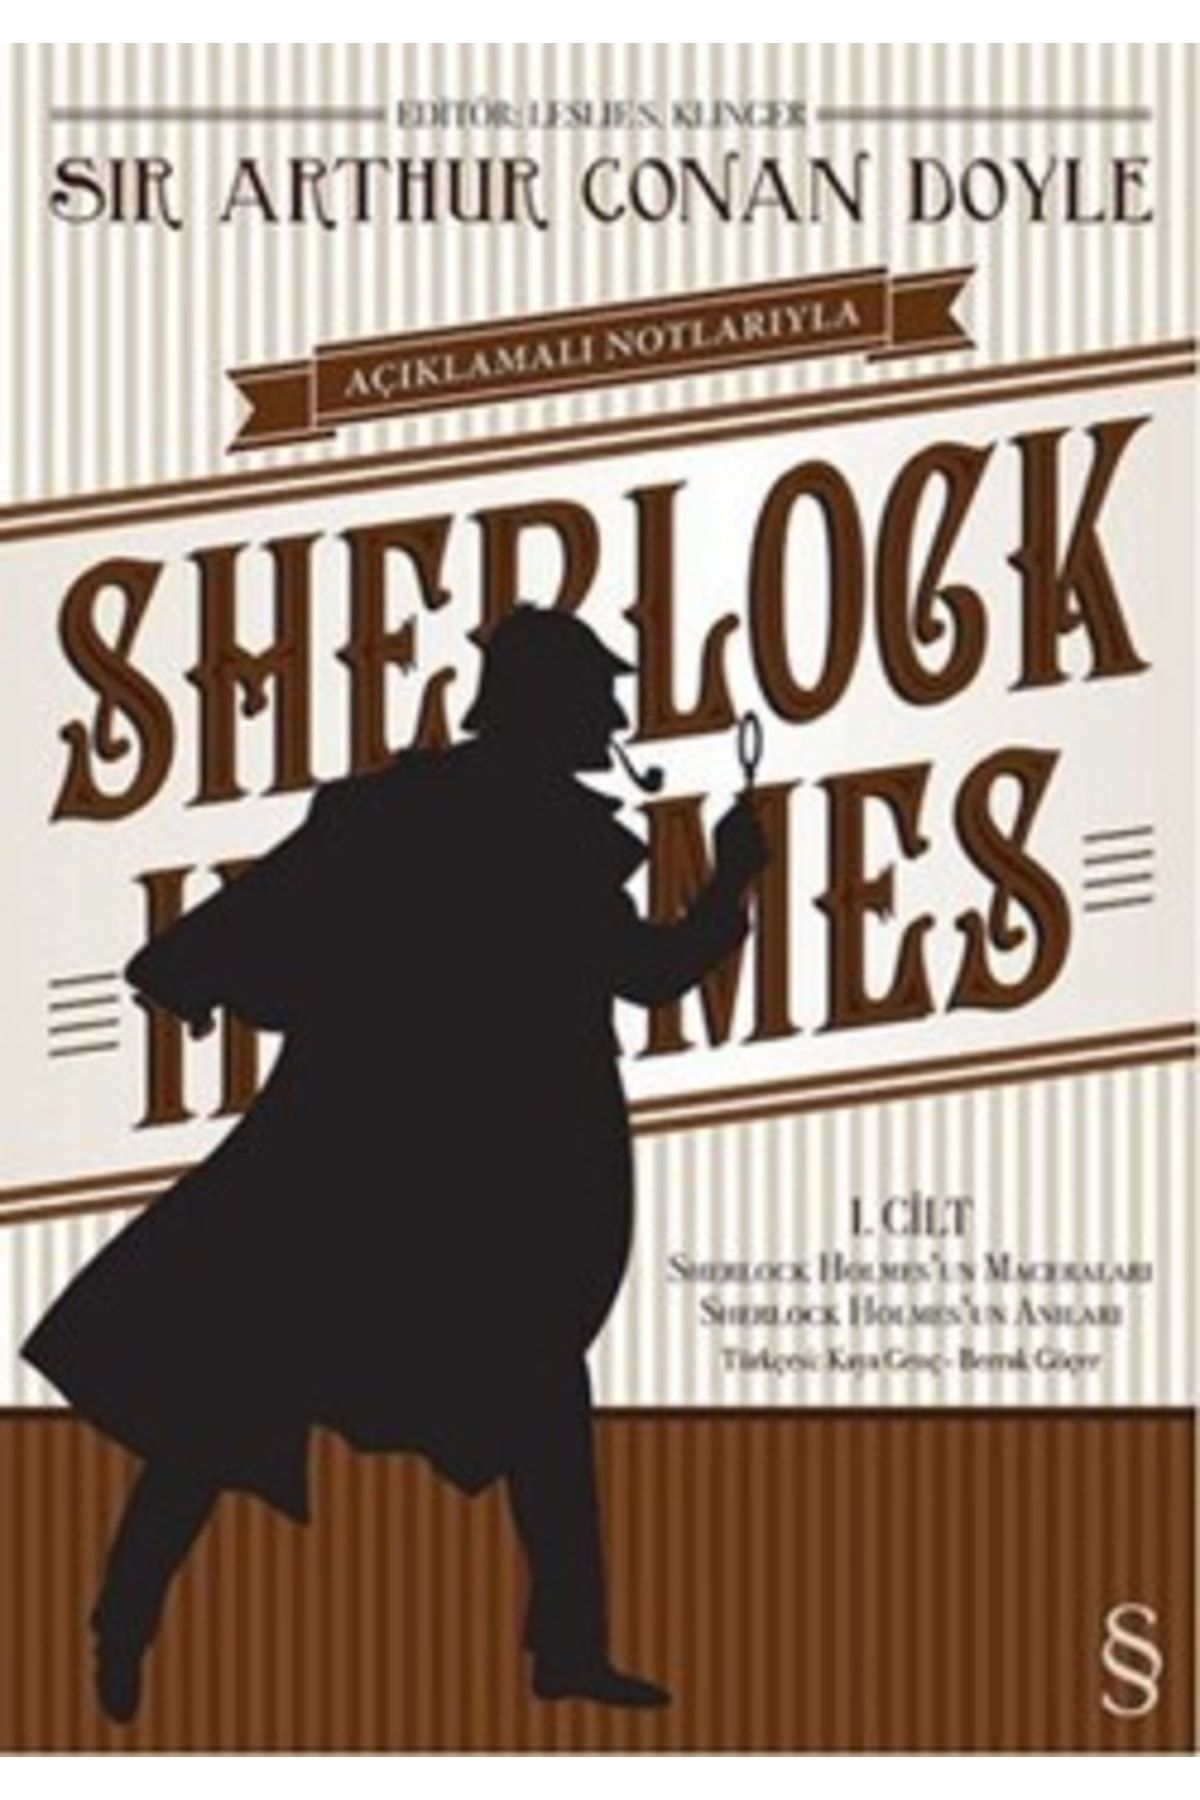 Everest Yayınları Açıklamalı Notlarıyla Sherlock Holmes Serisi 1